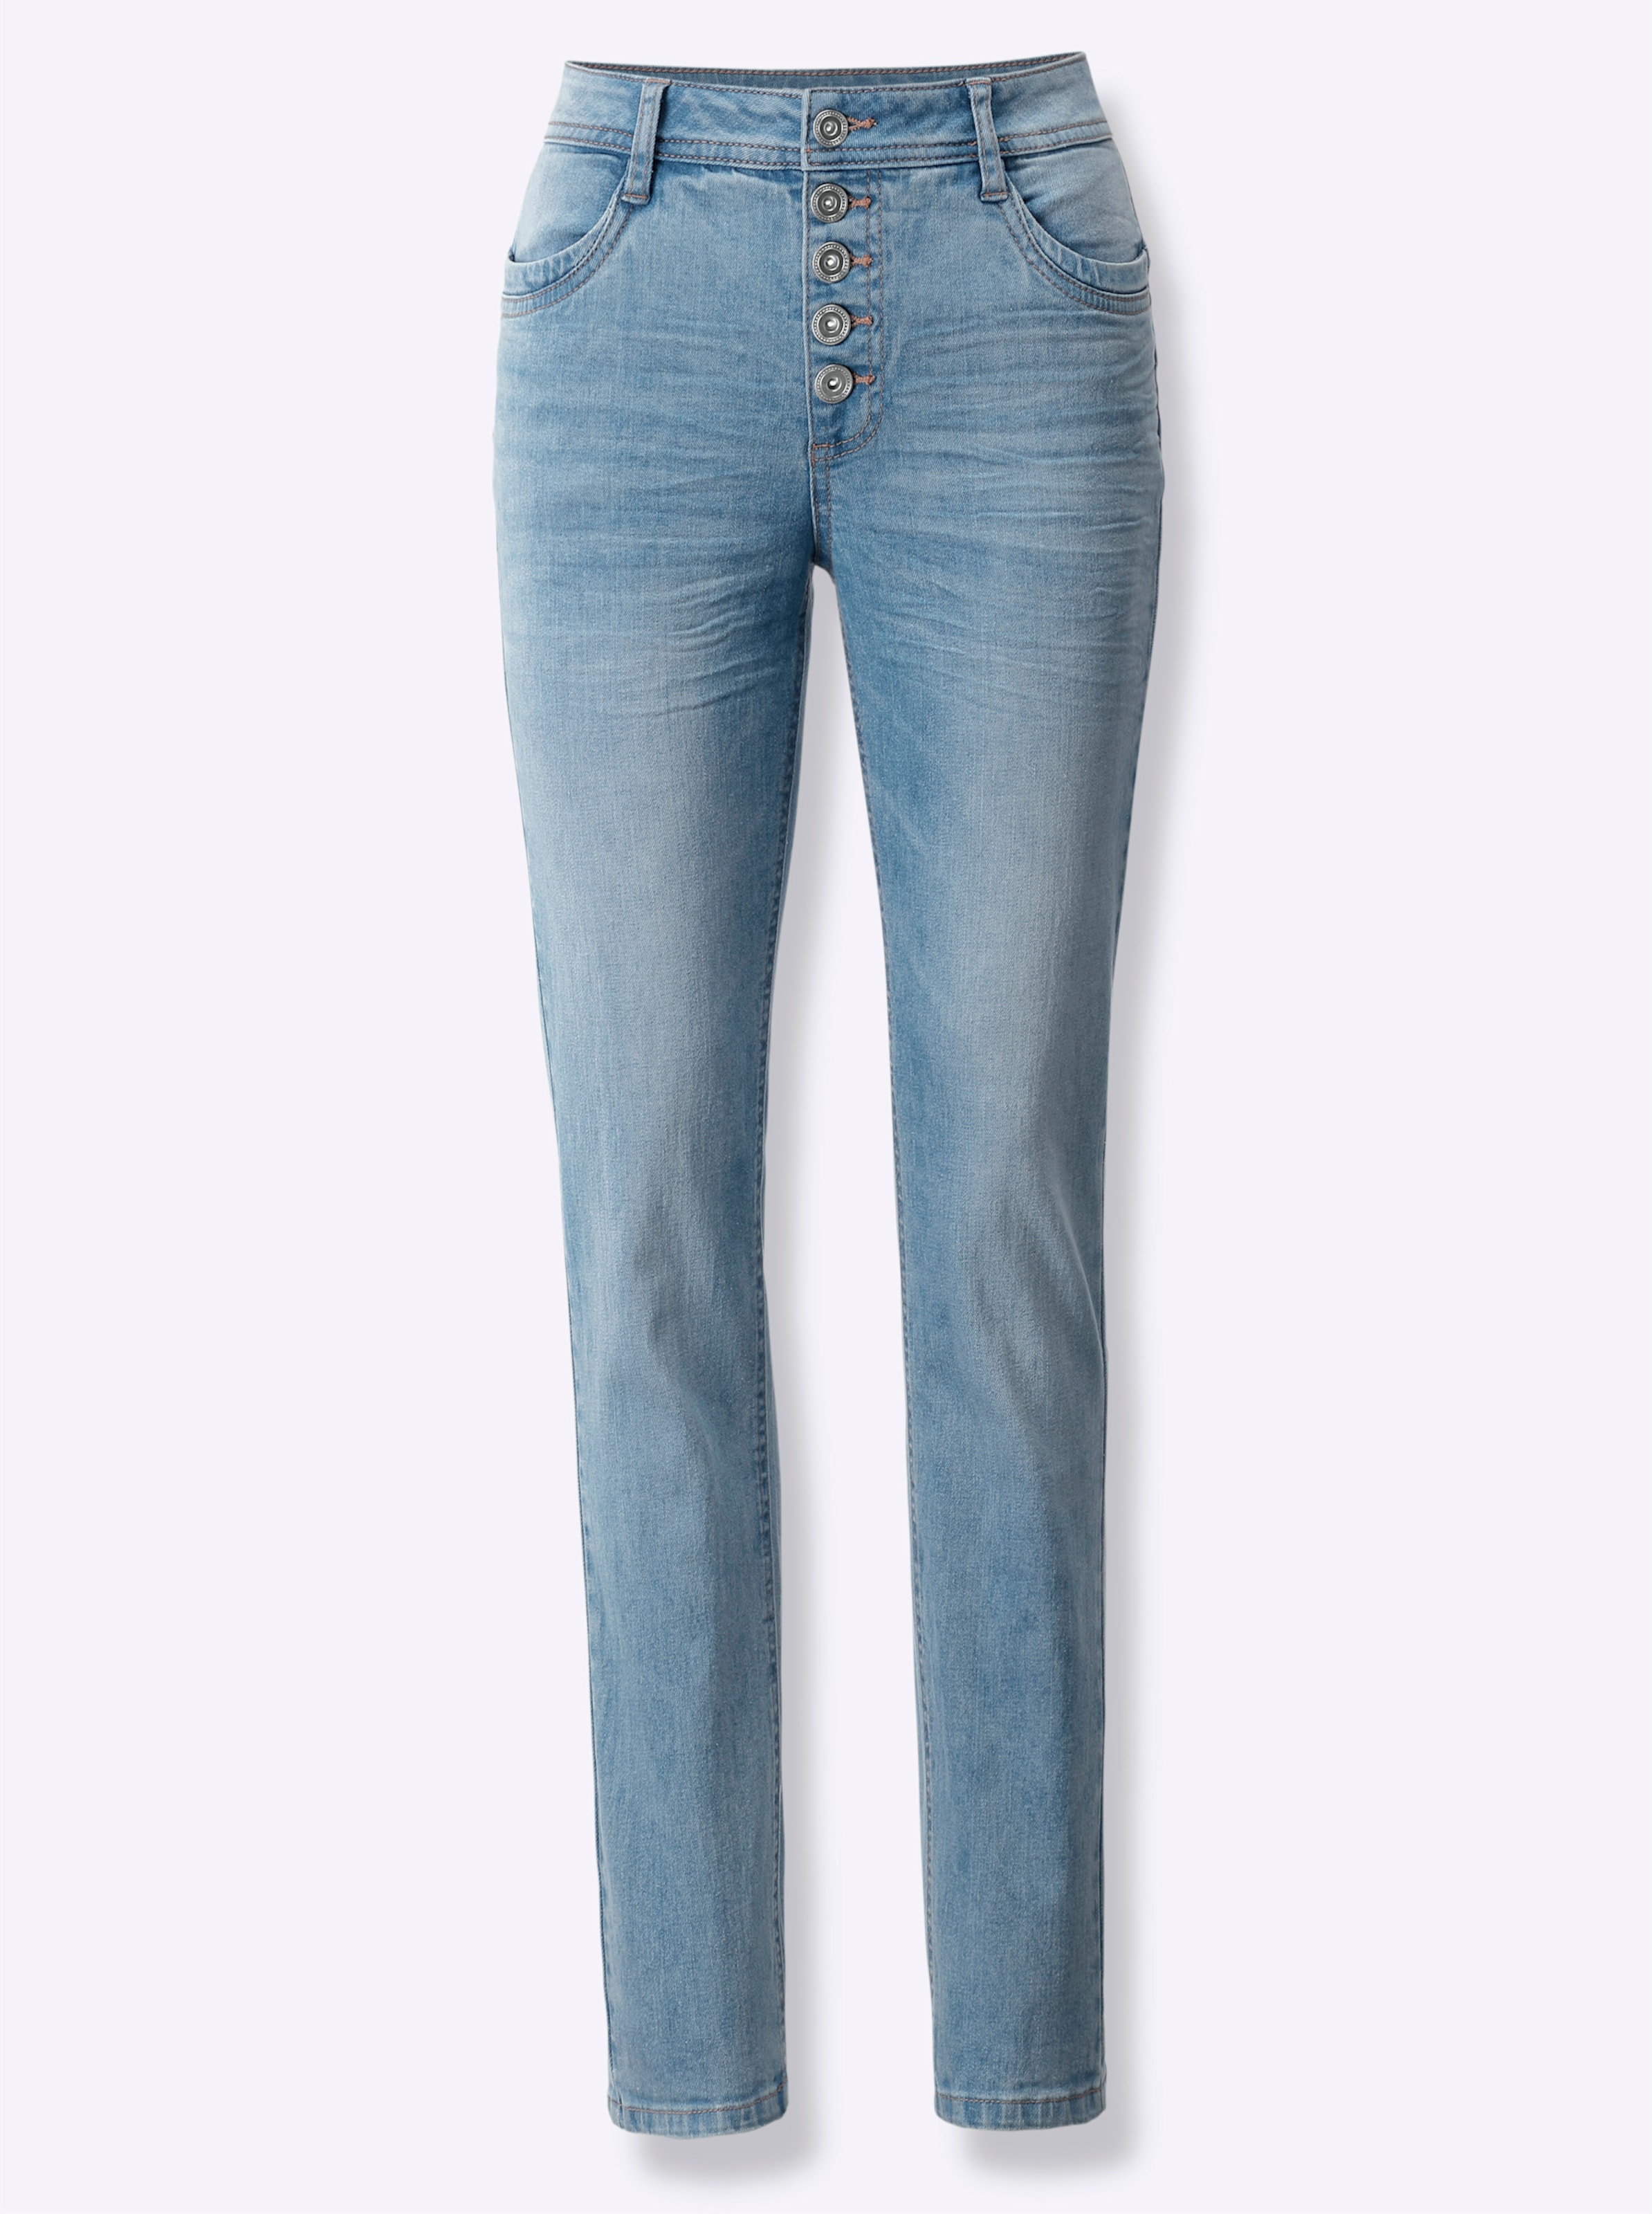 Witt Damen Push-up-Jeans, blue-bleached